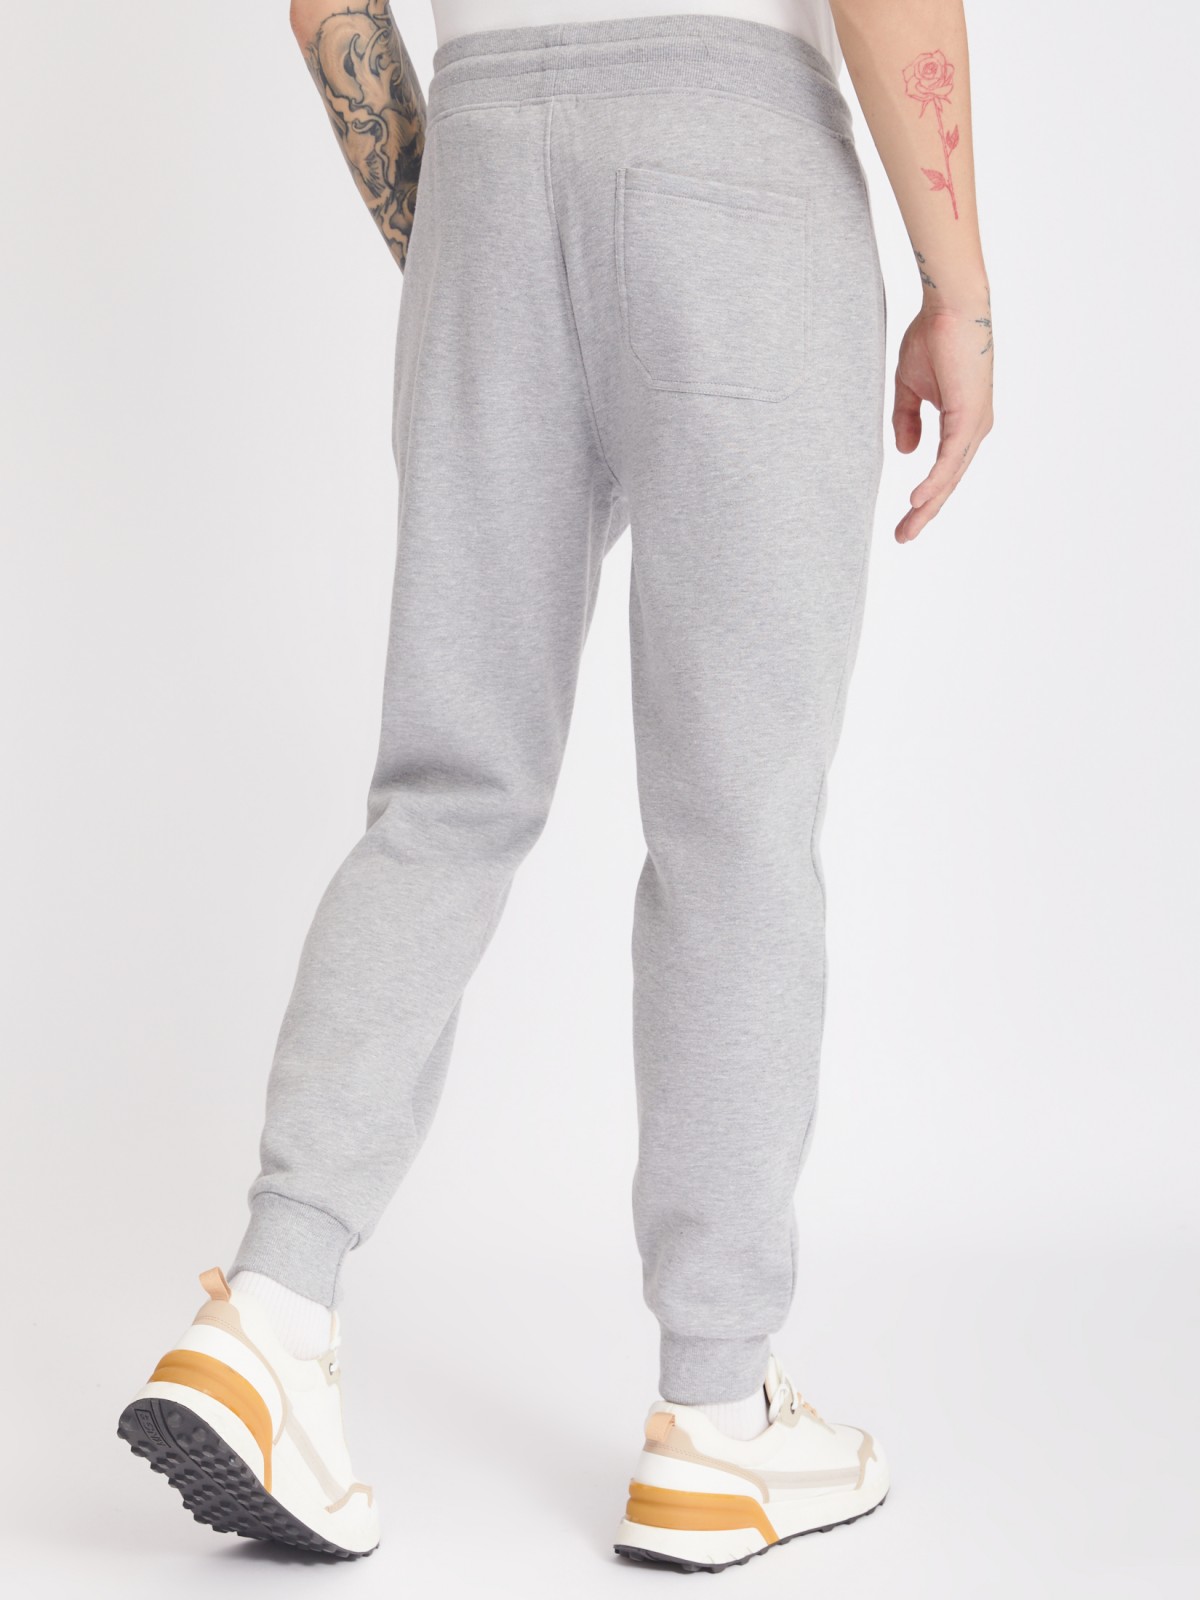 Утеплённые трикотажные брюки-джоггеры в спортивном стиле zolla 213337679012, цвет серый, размер S - фото 6